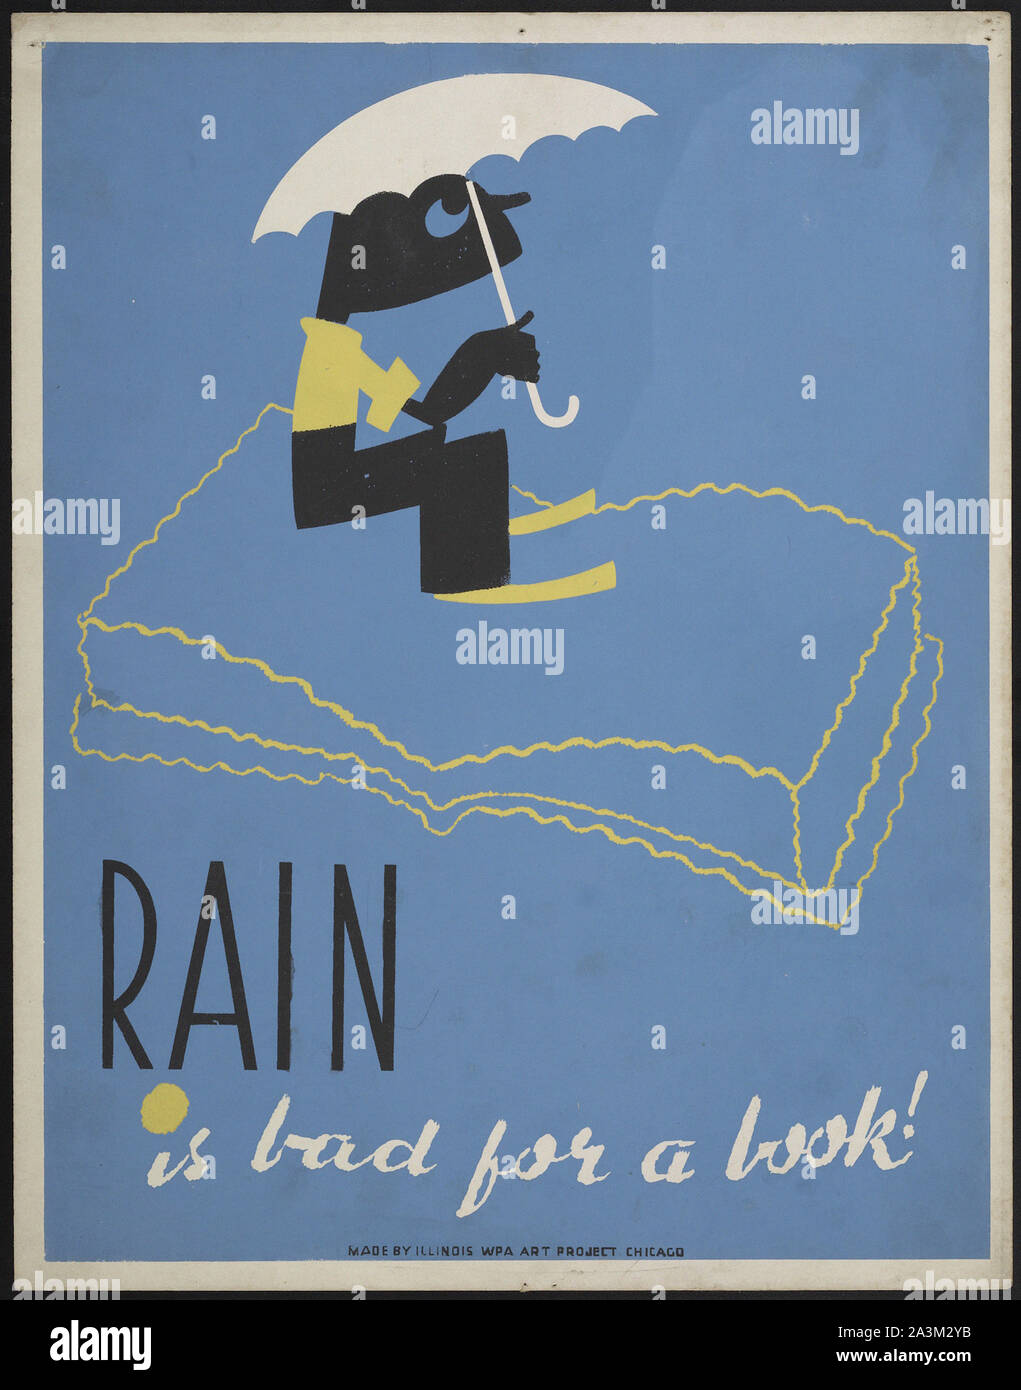 La lluvia es malo para un libro - Avance de trabajo Administración - Proyecto de arte Federal - Vintage poster Foto de stock